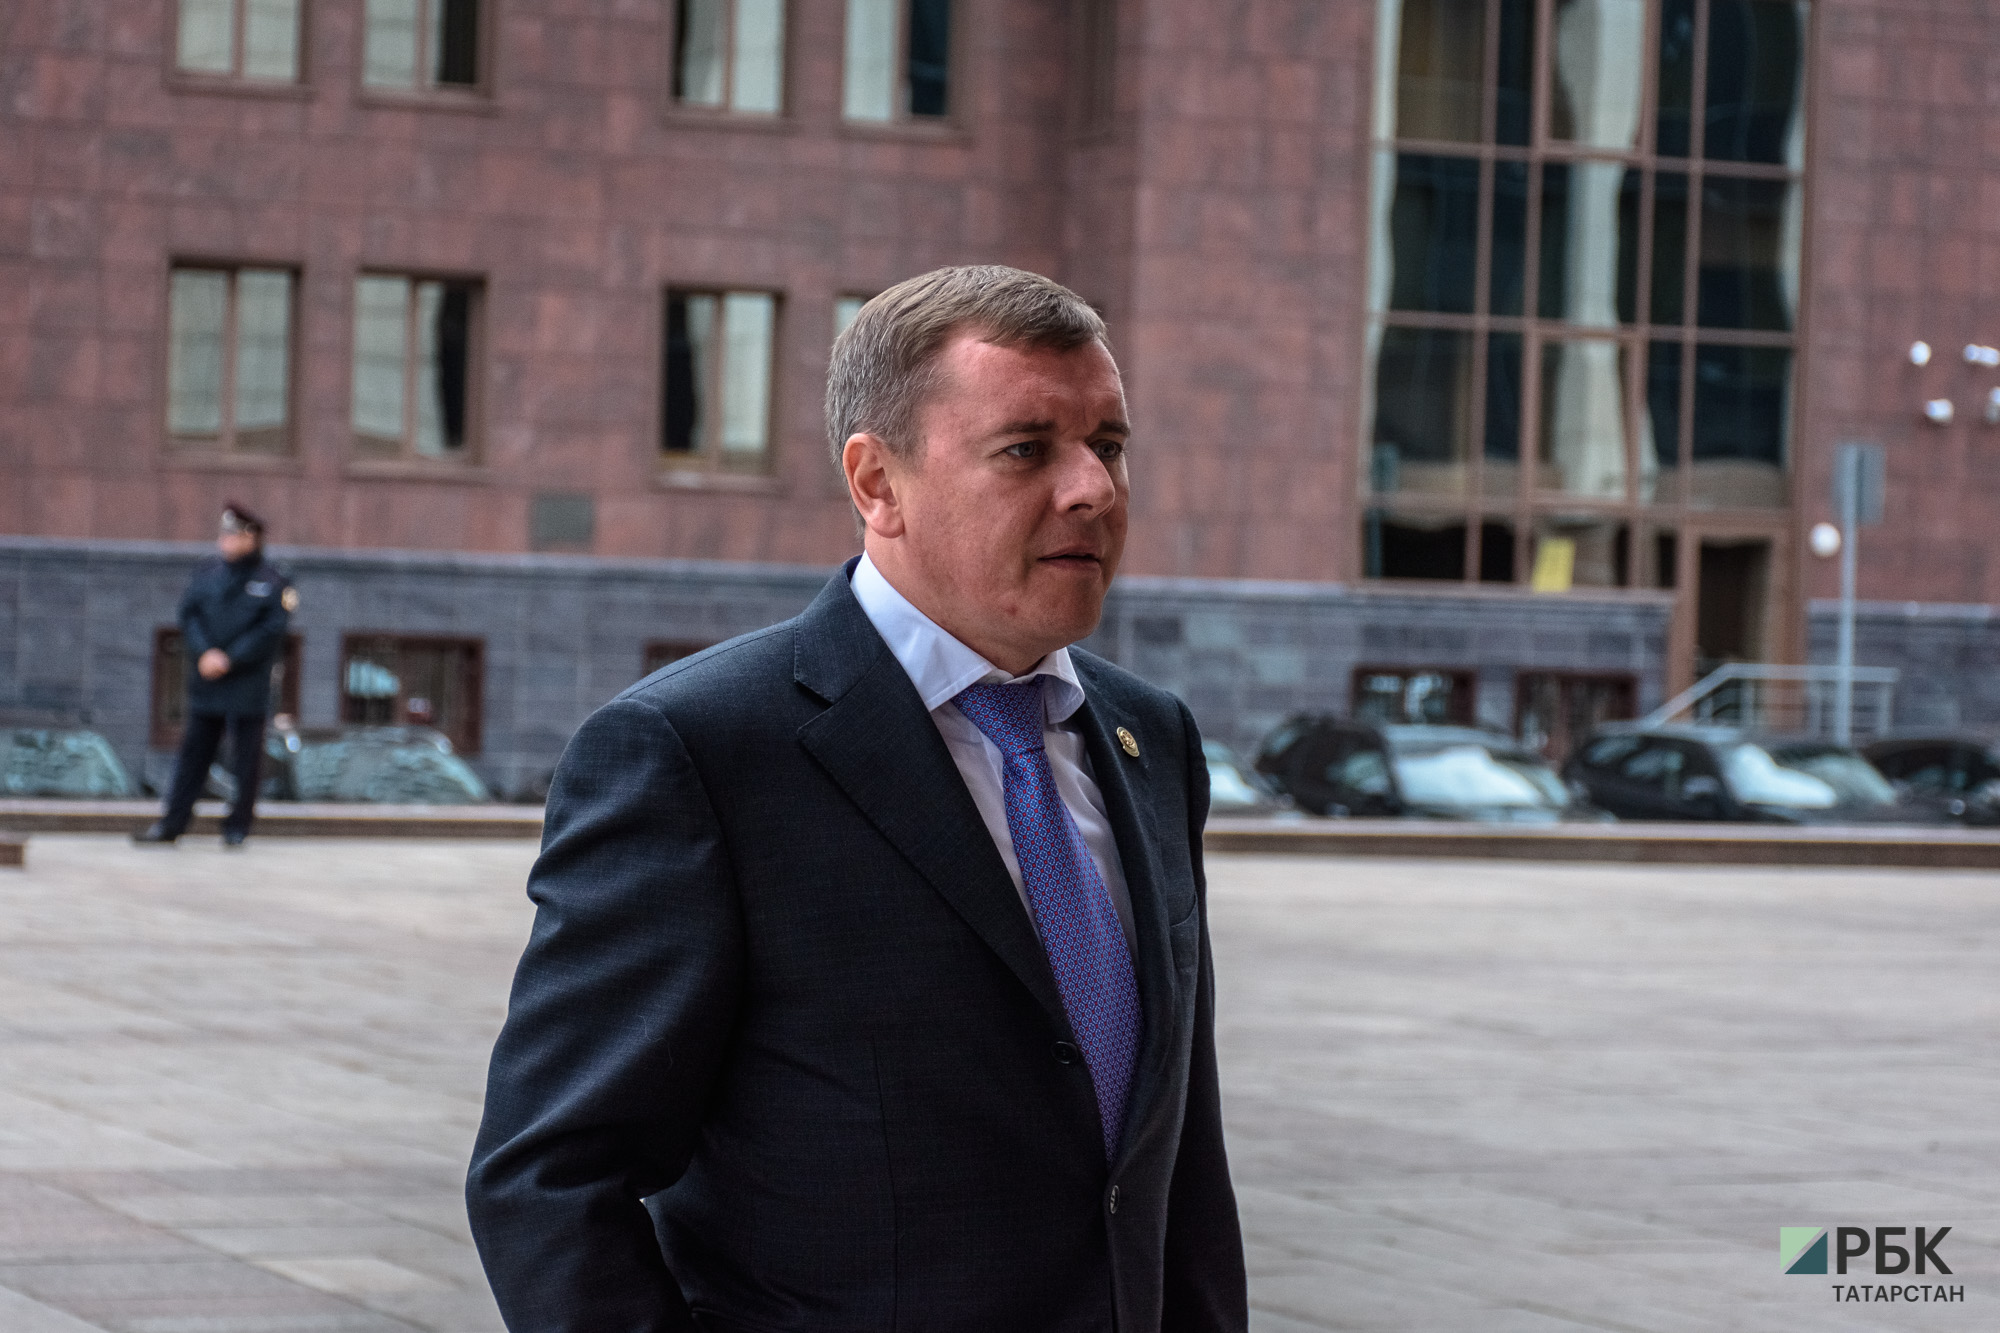 Преемником Ахметова на посту главы минсельхозпрода РТ стал Марат Зяббаров. Сейчас он работает в статусе исполняющего обязанности.